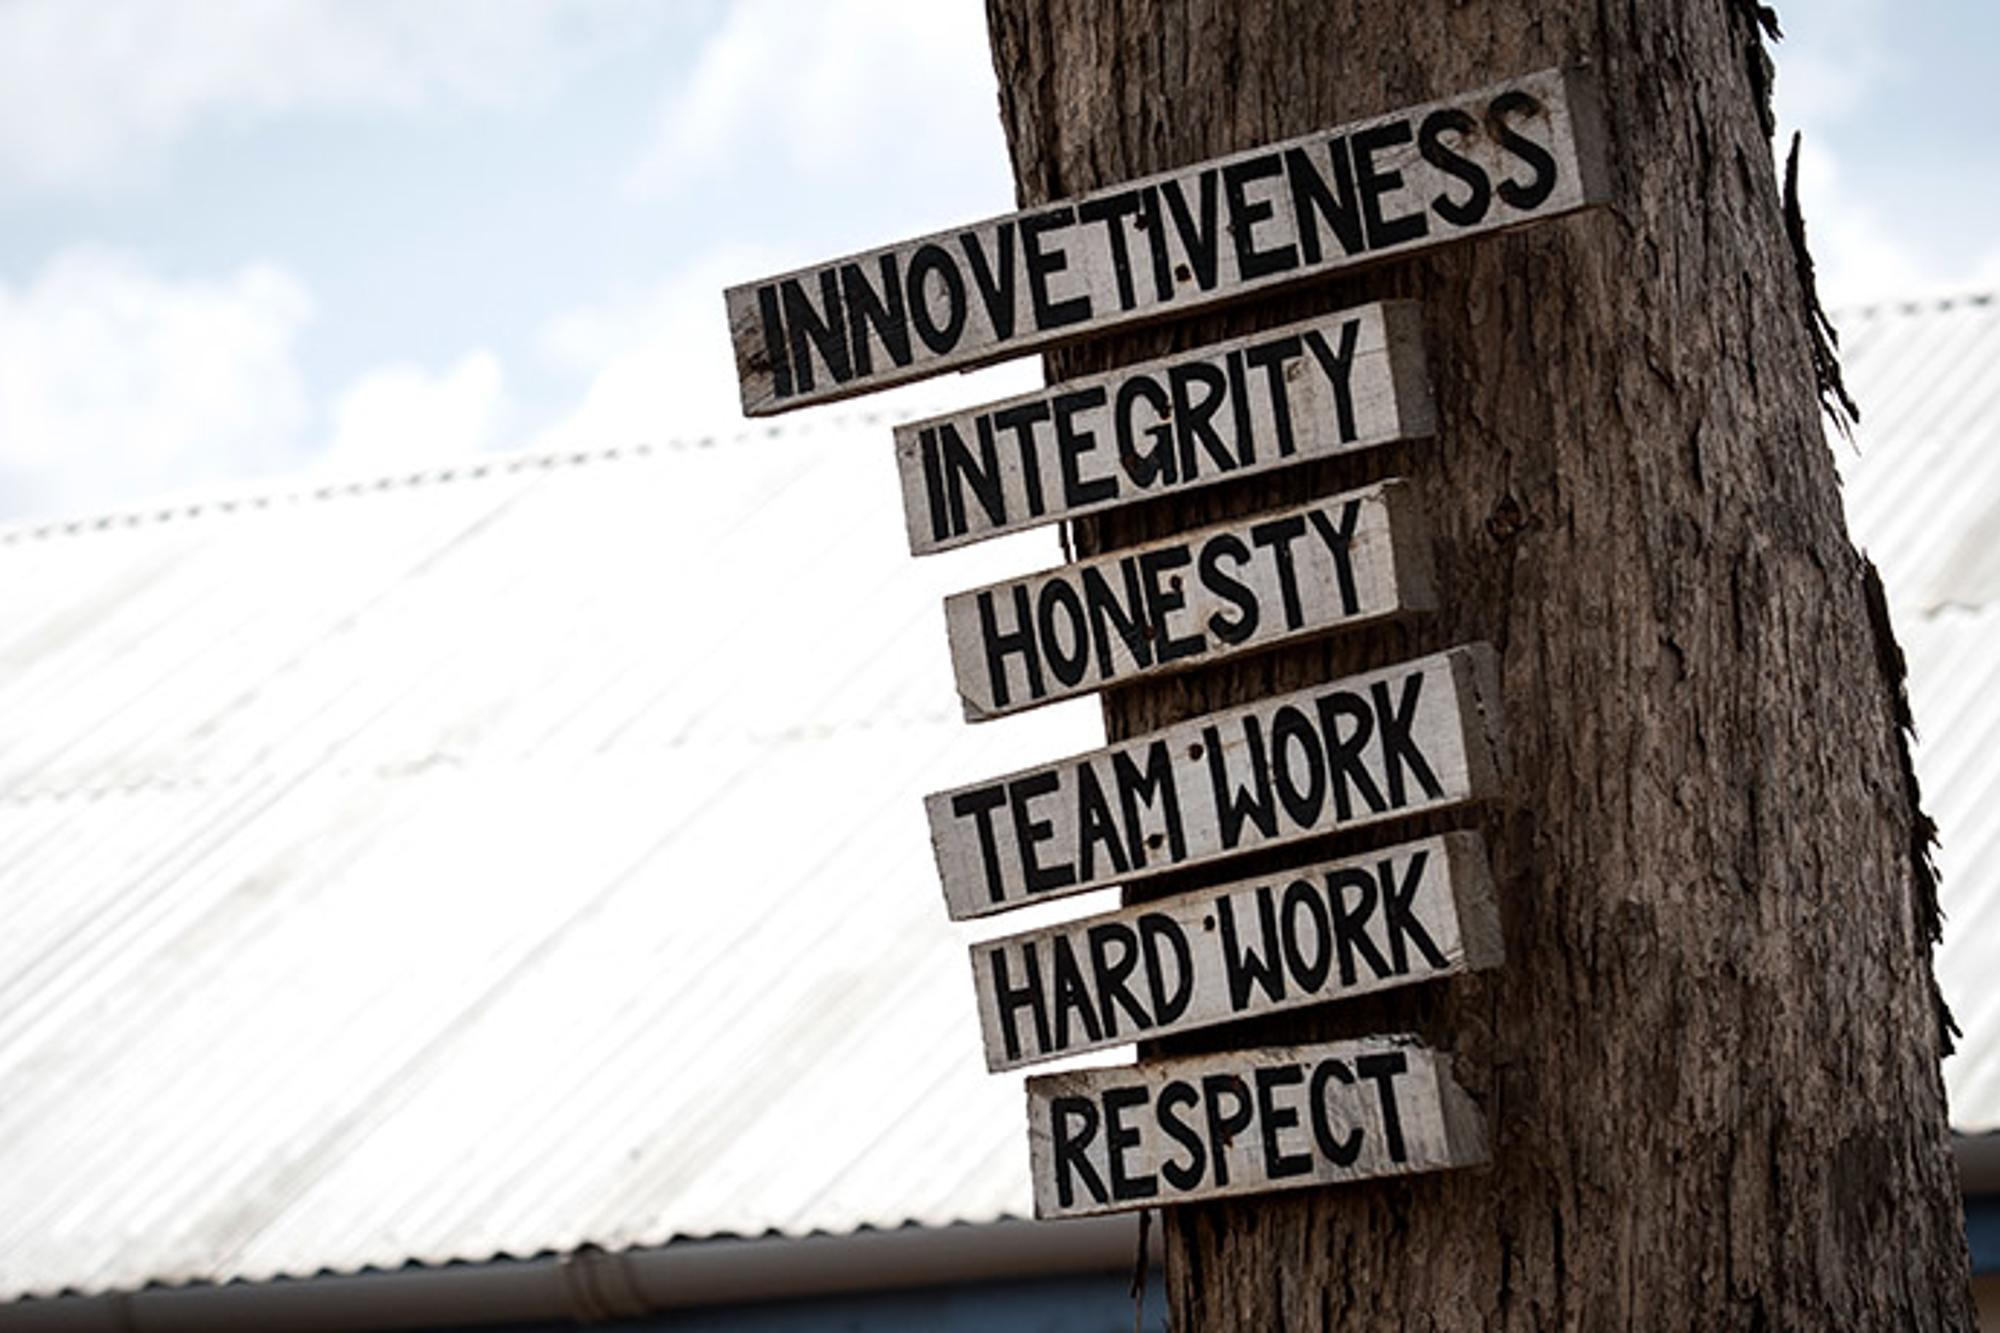 6 skyltar, med olika ord, som sitter på ett träd. På skyltarna står det "Innovetiveness", "Integrity", "Honesty", "Teamwork", "Hard work" och "Respect".